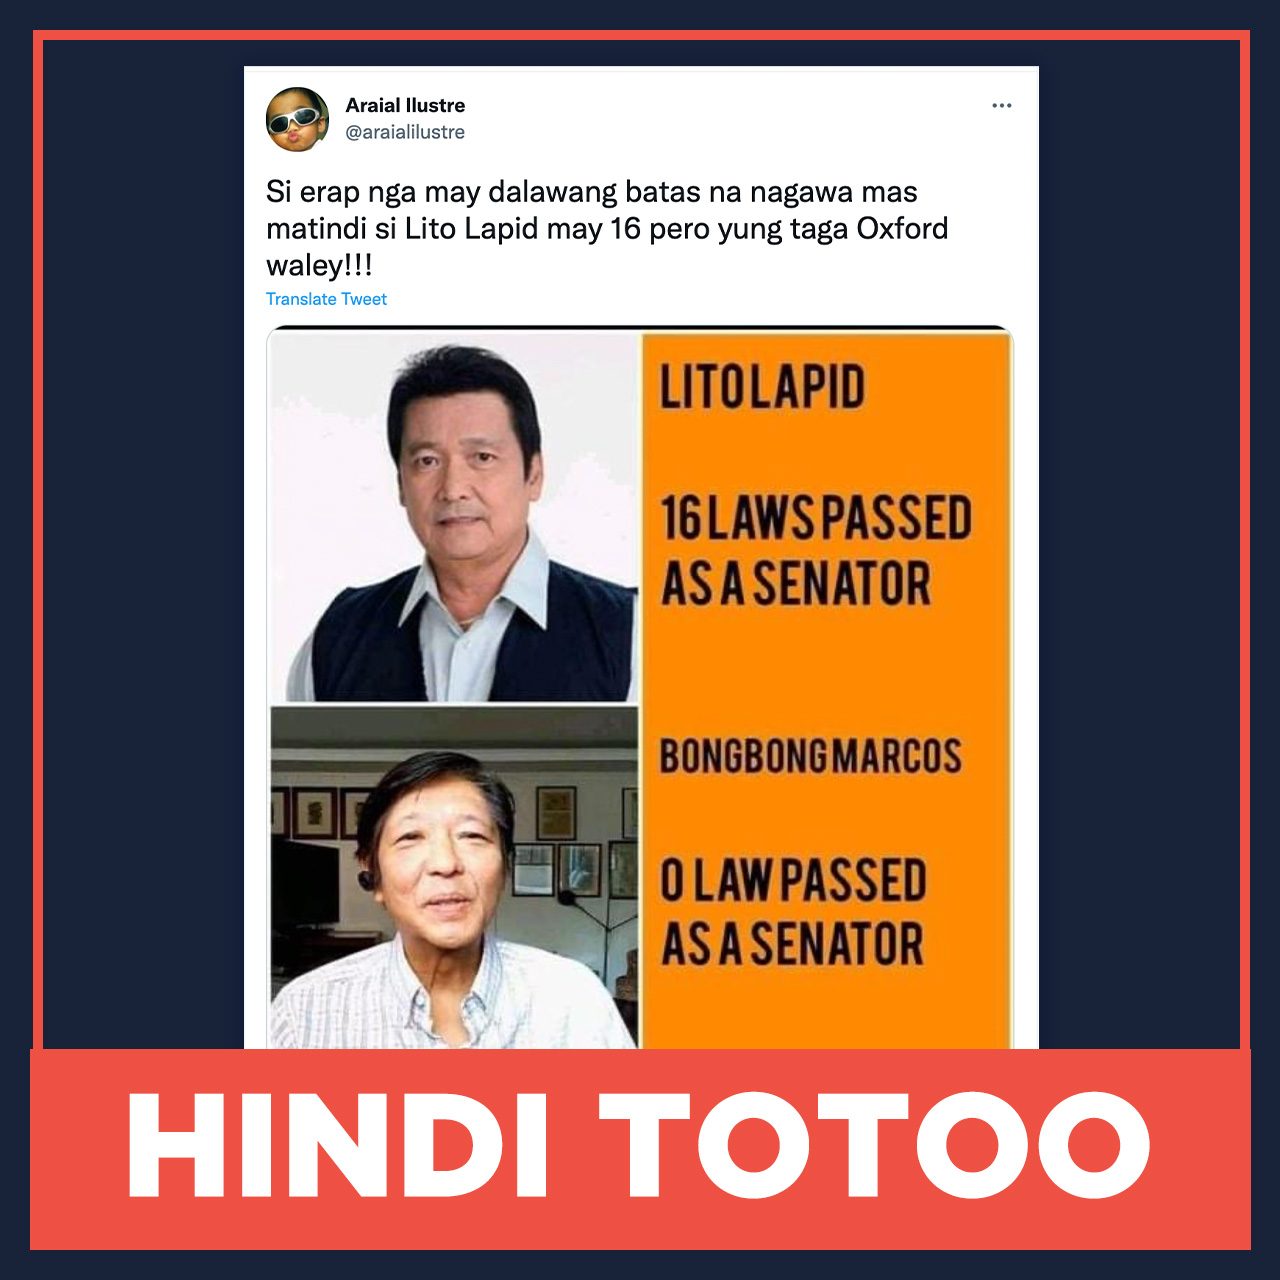 HINDI TOTOO: Walang naipasang batas si Bongbong Marcos habang senador